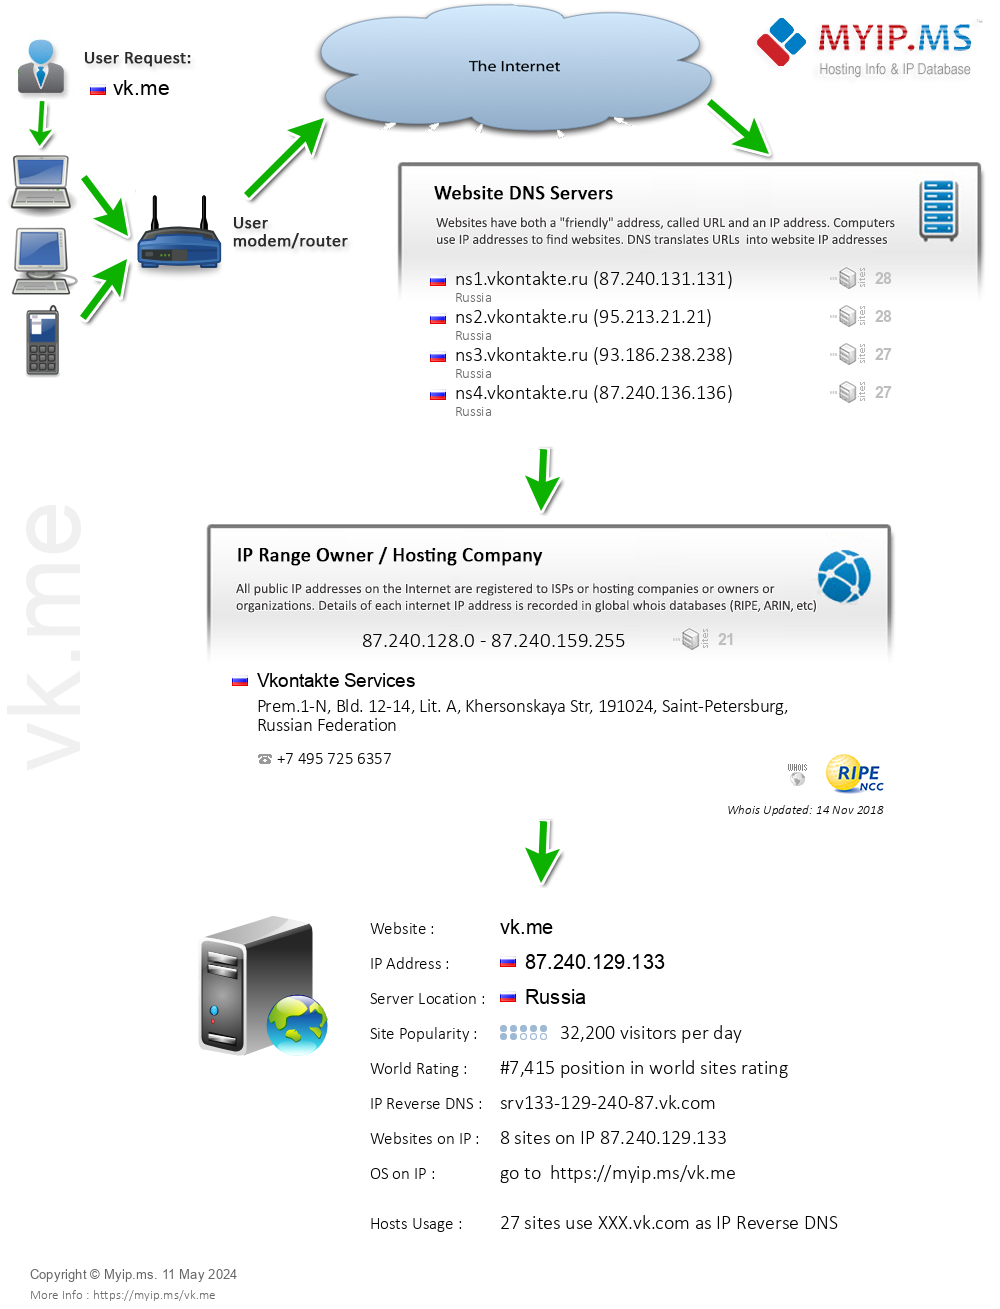 Vk.me - Website Hosting Visual IP Diagram